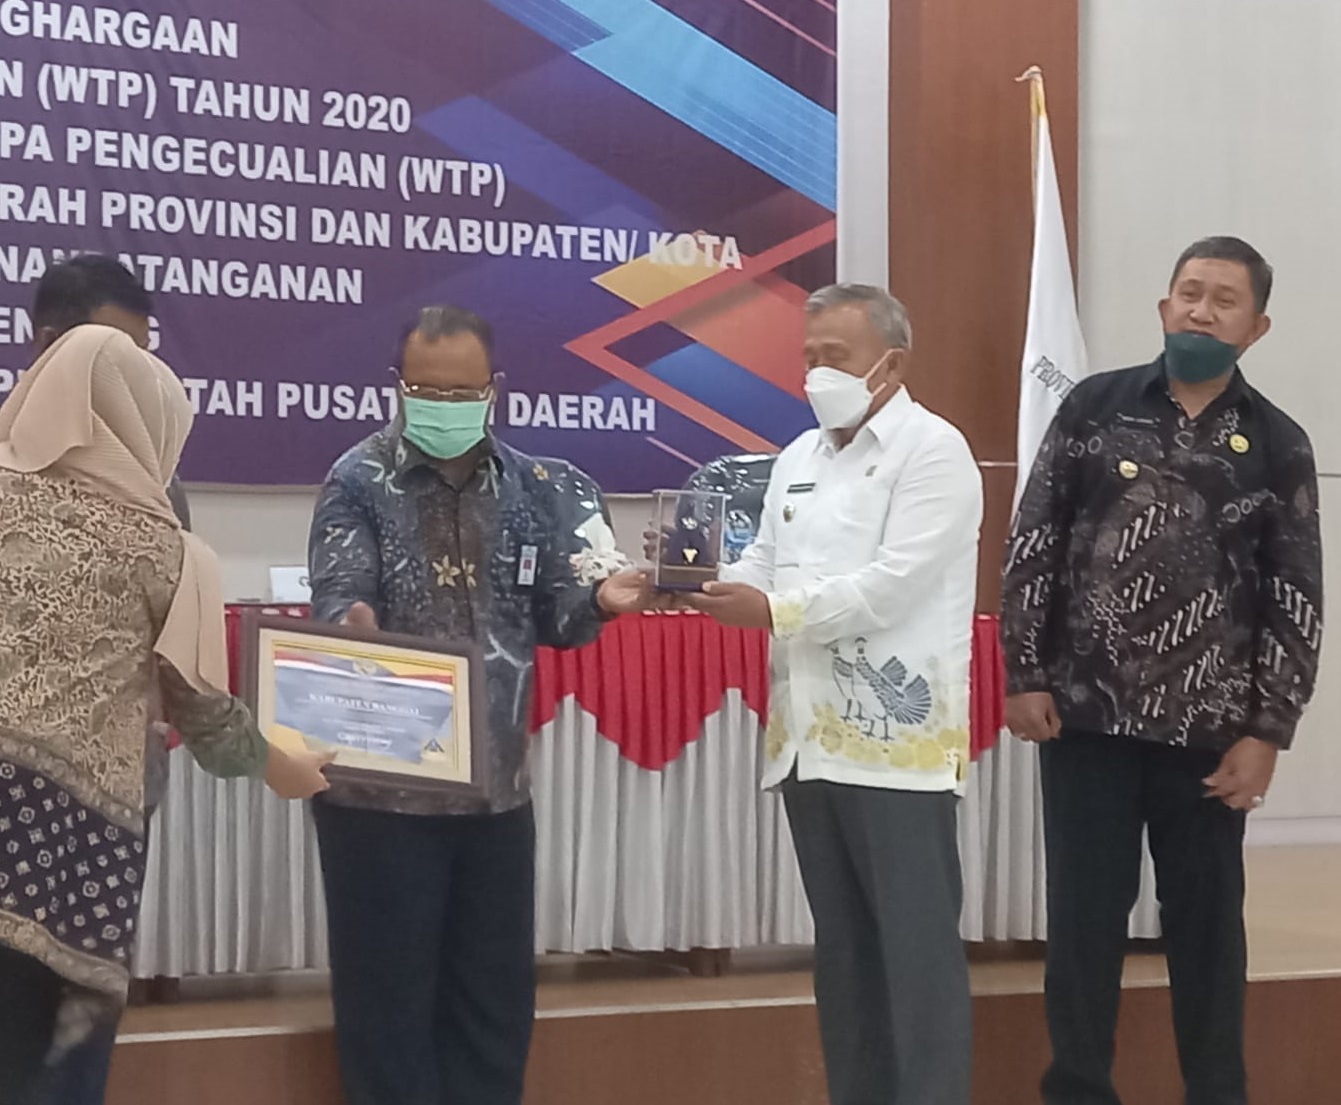 Wakil Bupati Banggai Hadiri Penyerahan Piagam Penghargaan WTP di Kota Palu